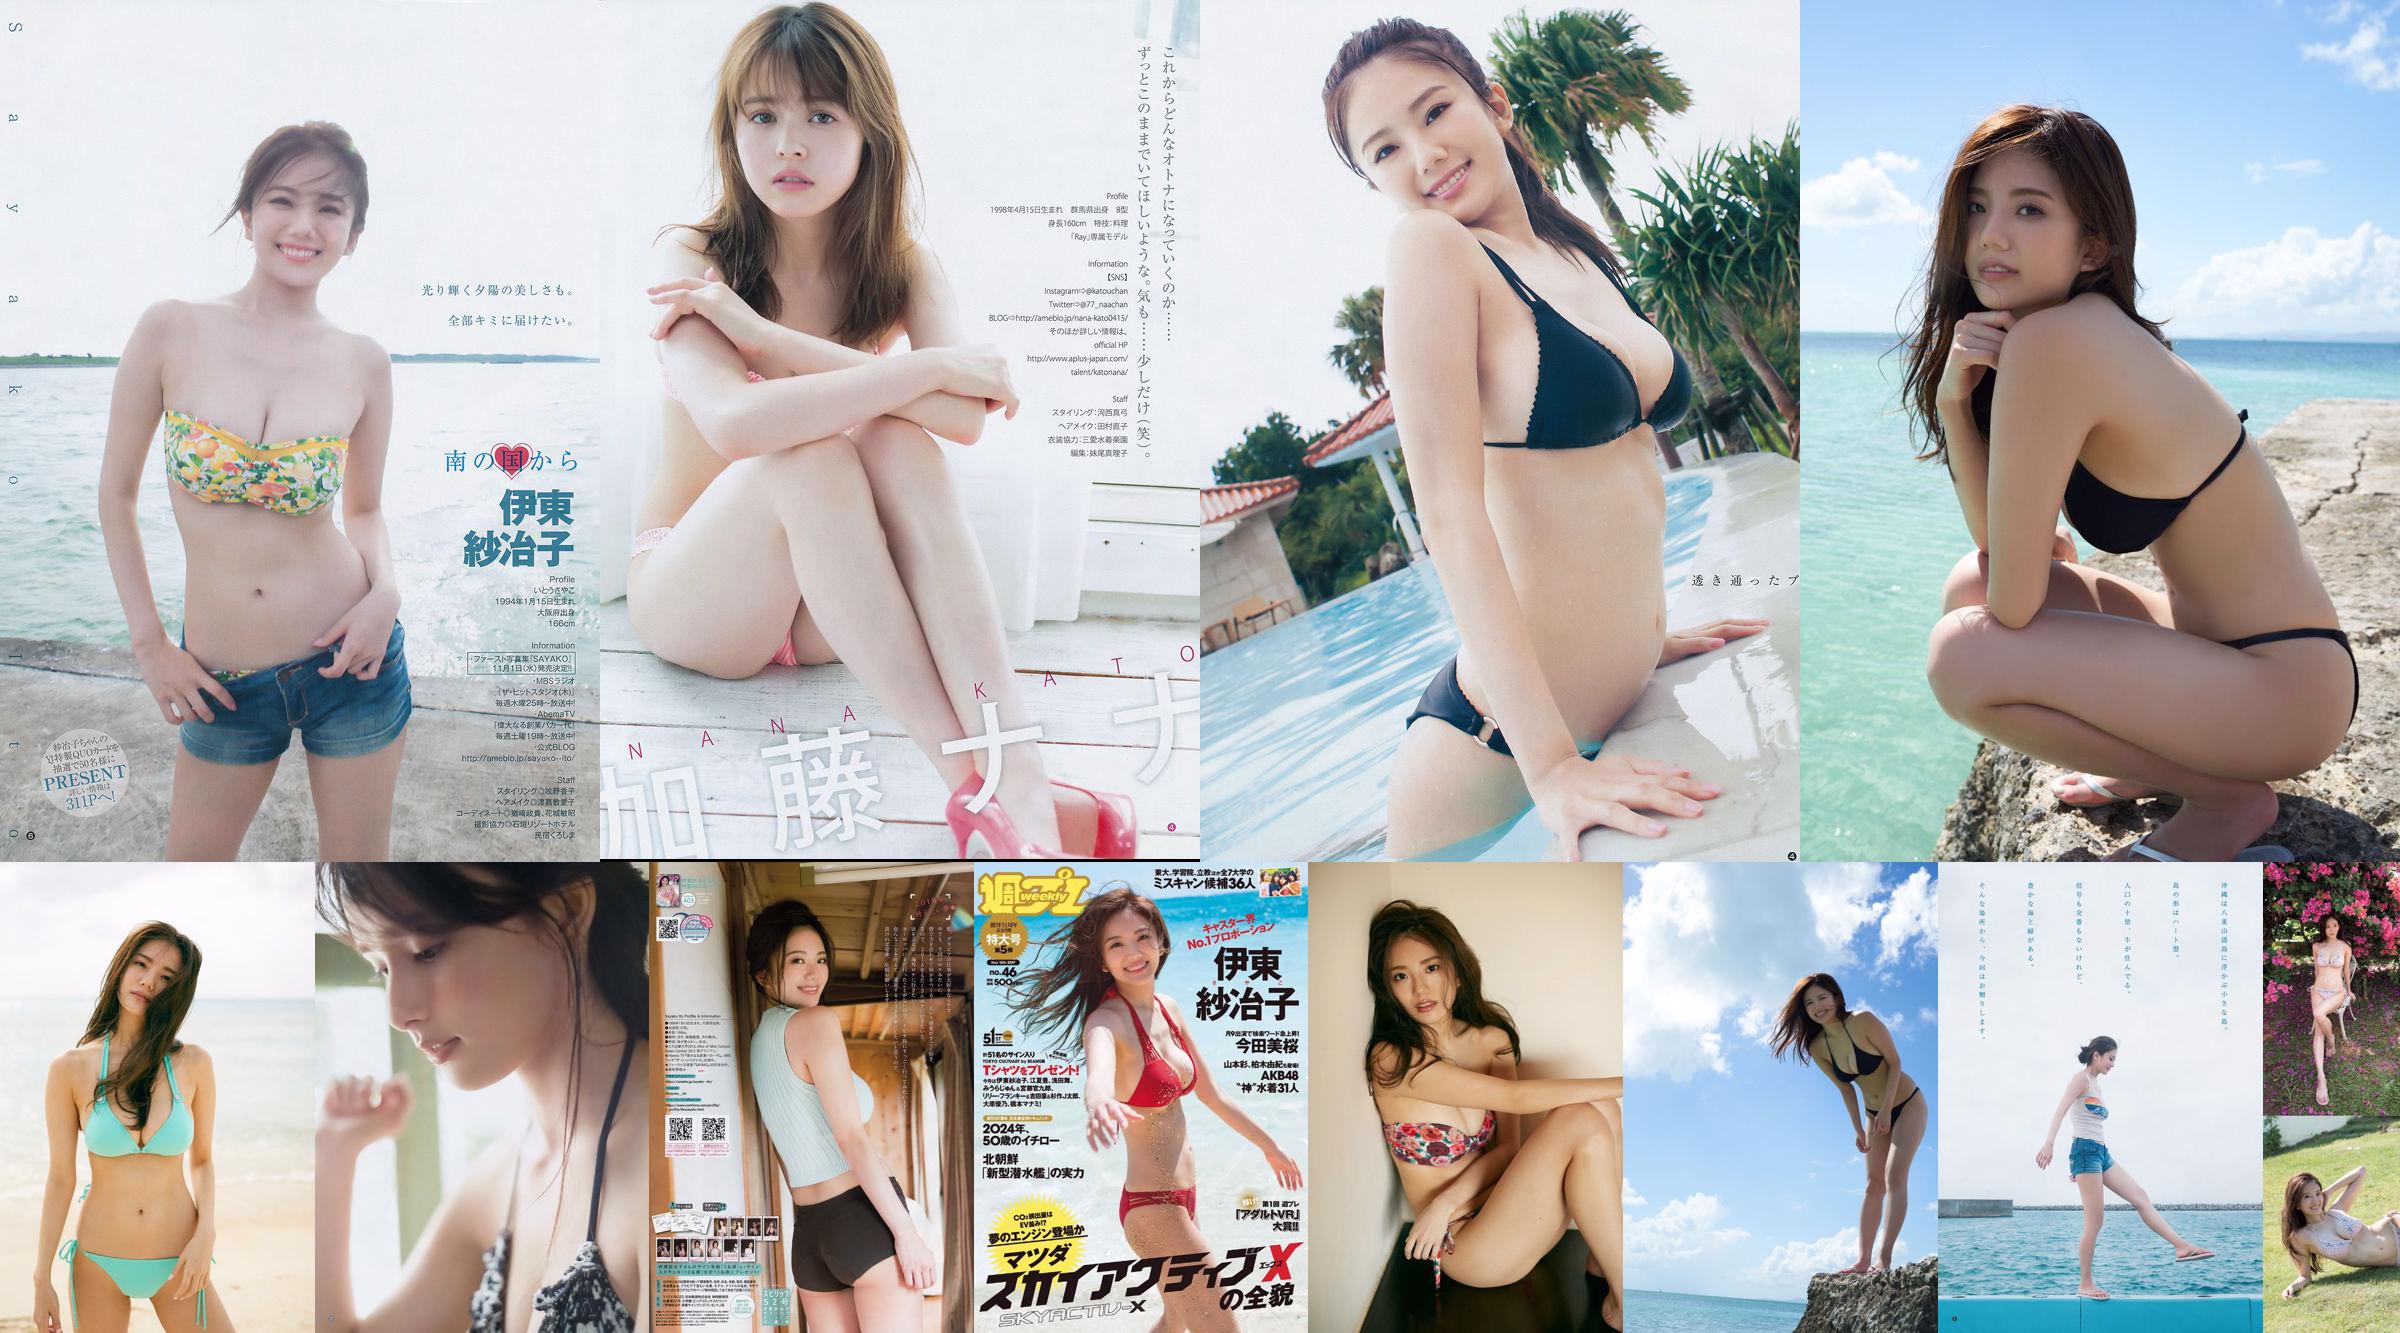 Ito Sayeko, Mima Reiko, Sugimoto Yumi, Sato Reina, Yoshiki りさ Toyama Akiko, Naninao [Weekly Playboy] 2016 No.36 Photo Magazine No.5f916c Page 4